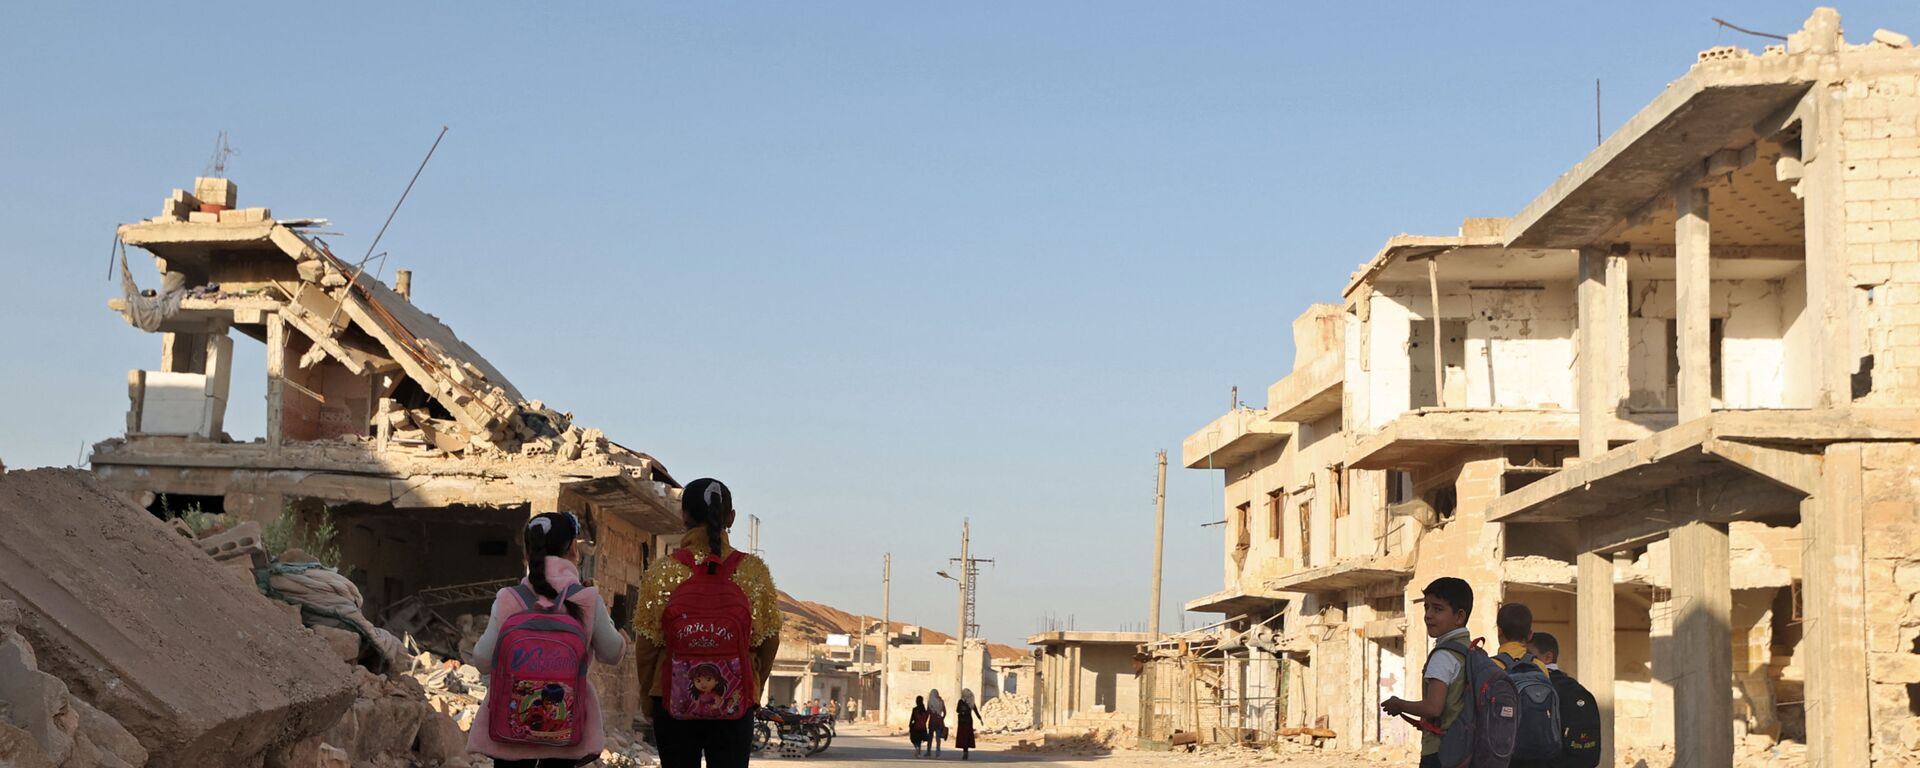 أطفال يمشون بين الأنقاض أثناء حضورهم اليوم الأول من المدرسة في قرية في ريف إدلب شمال غرب سوريا، 9 أكتوبر 2021.  - سبوتنيك عربي, 1920, 29.01.2022